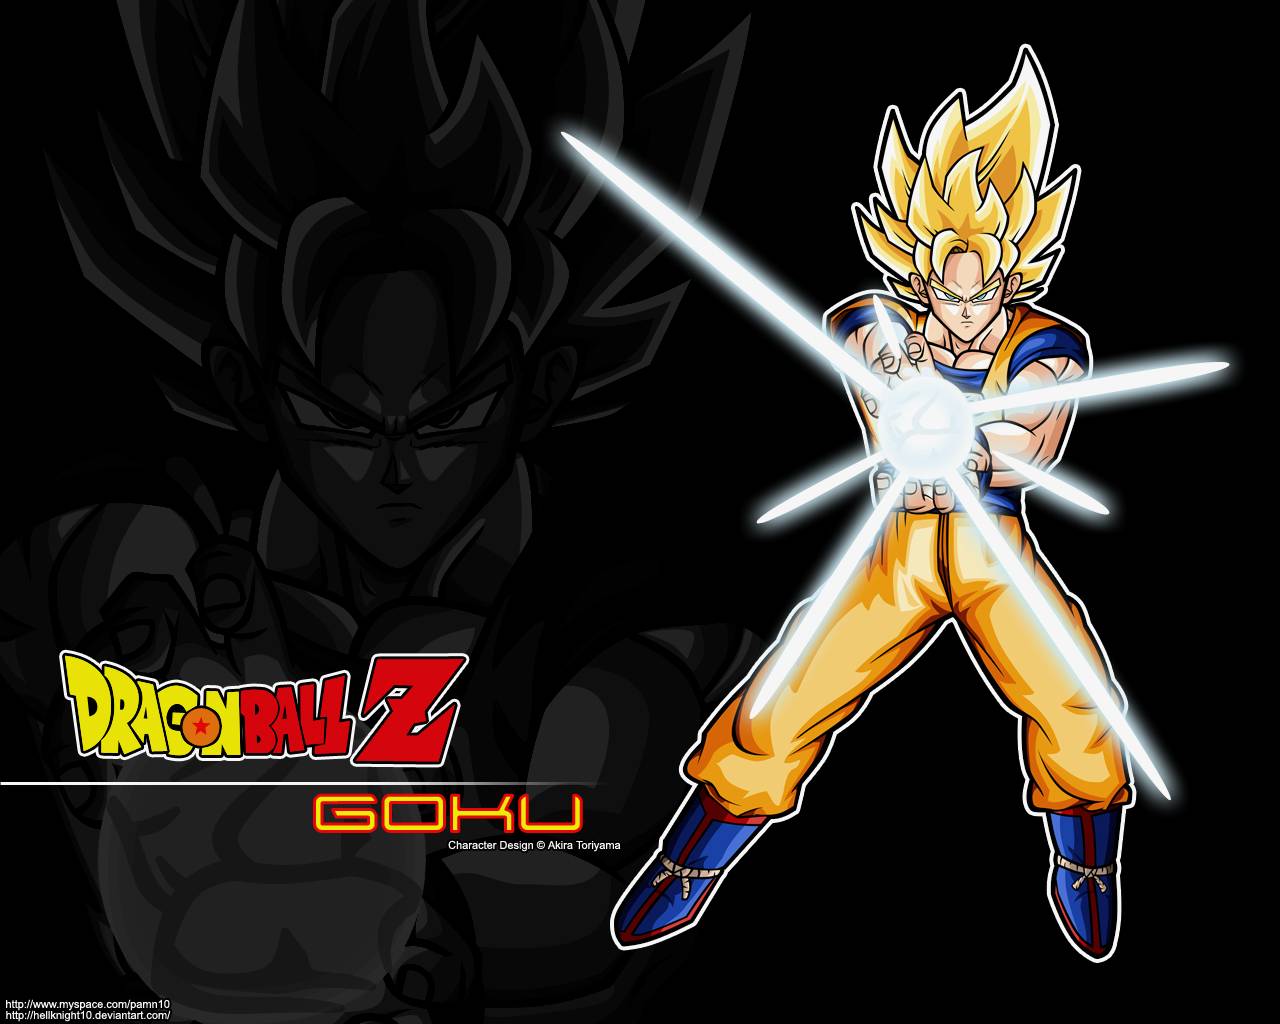 Anime Dragon Ball Z Image Wallpaper Goku Super Saiyan Tweet